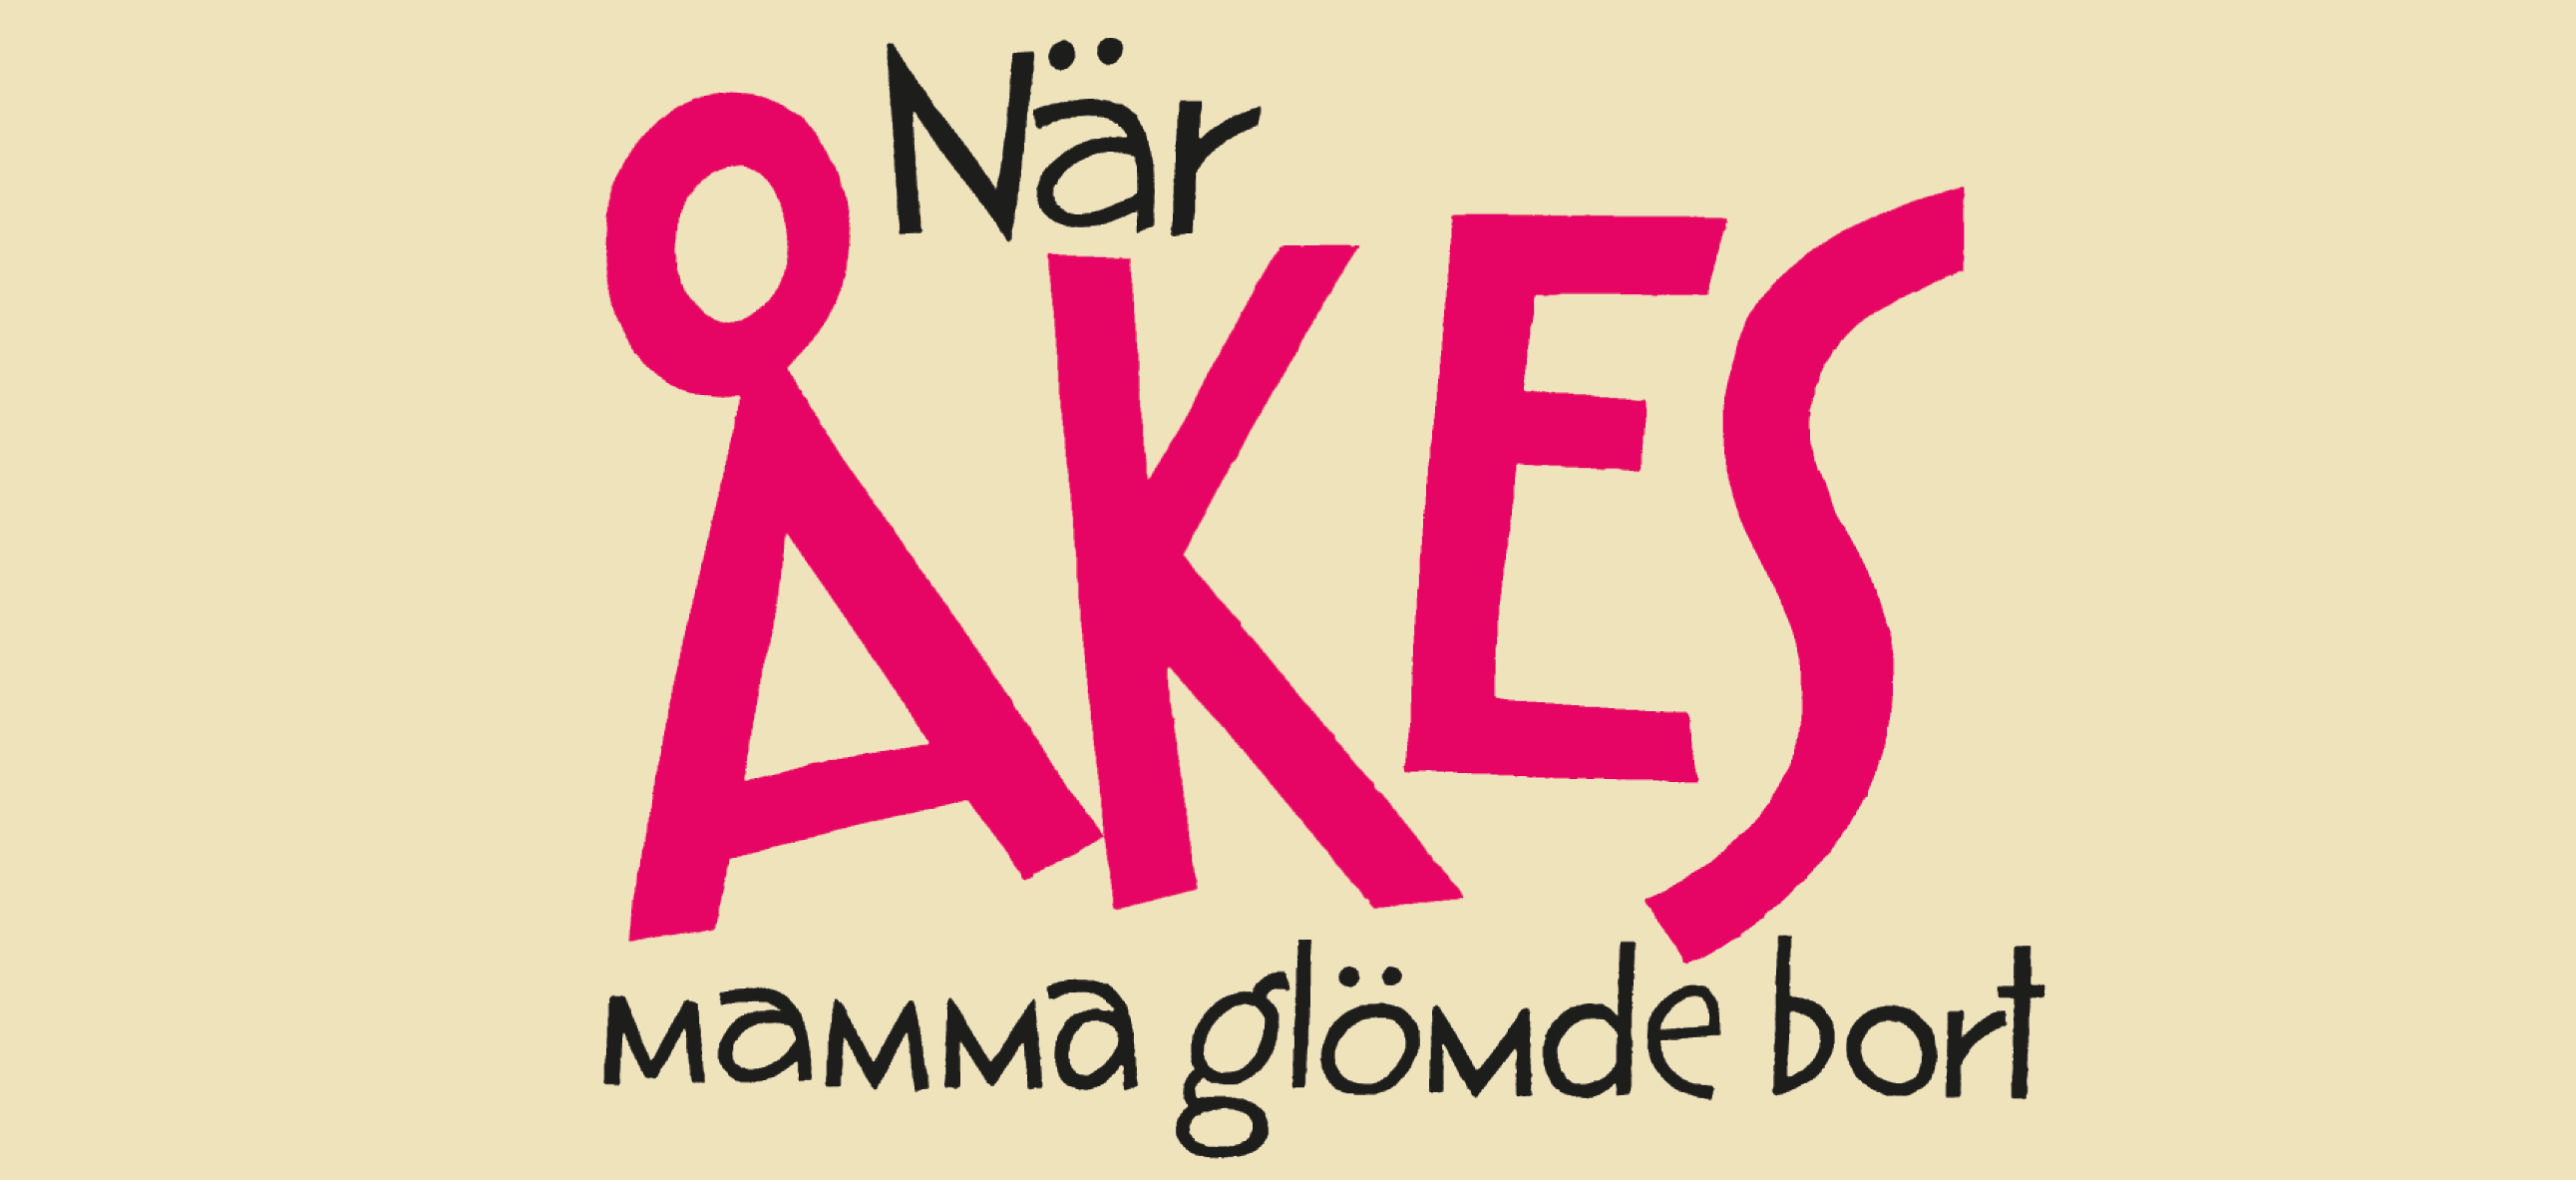 Texten När Åkes mamma glömde bort i stark rosa mot en ljusgul bakgrund